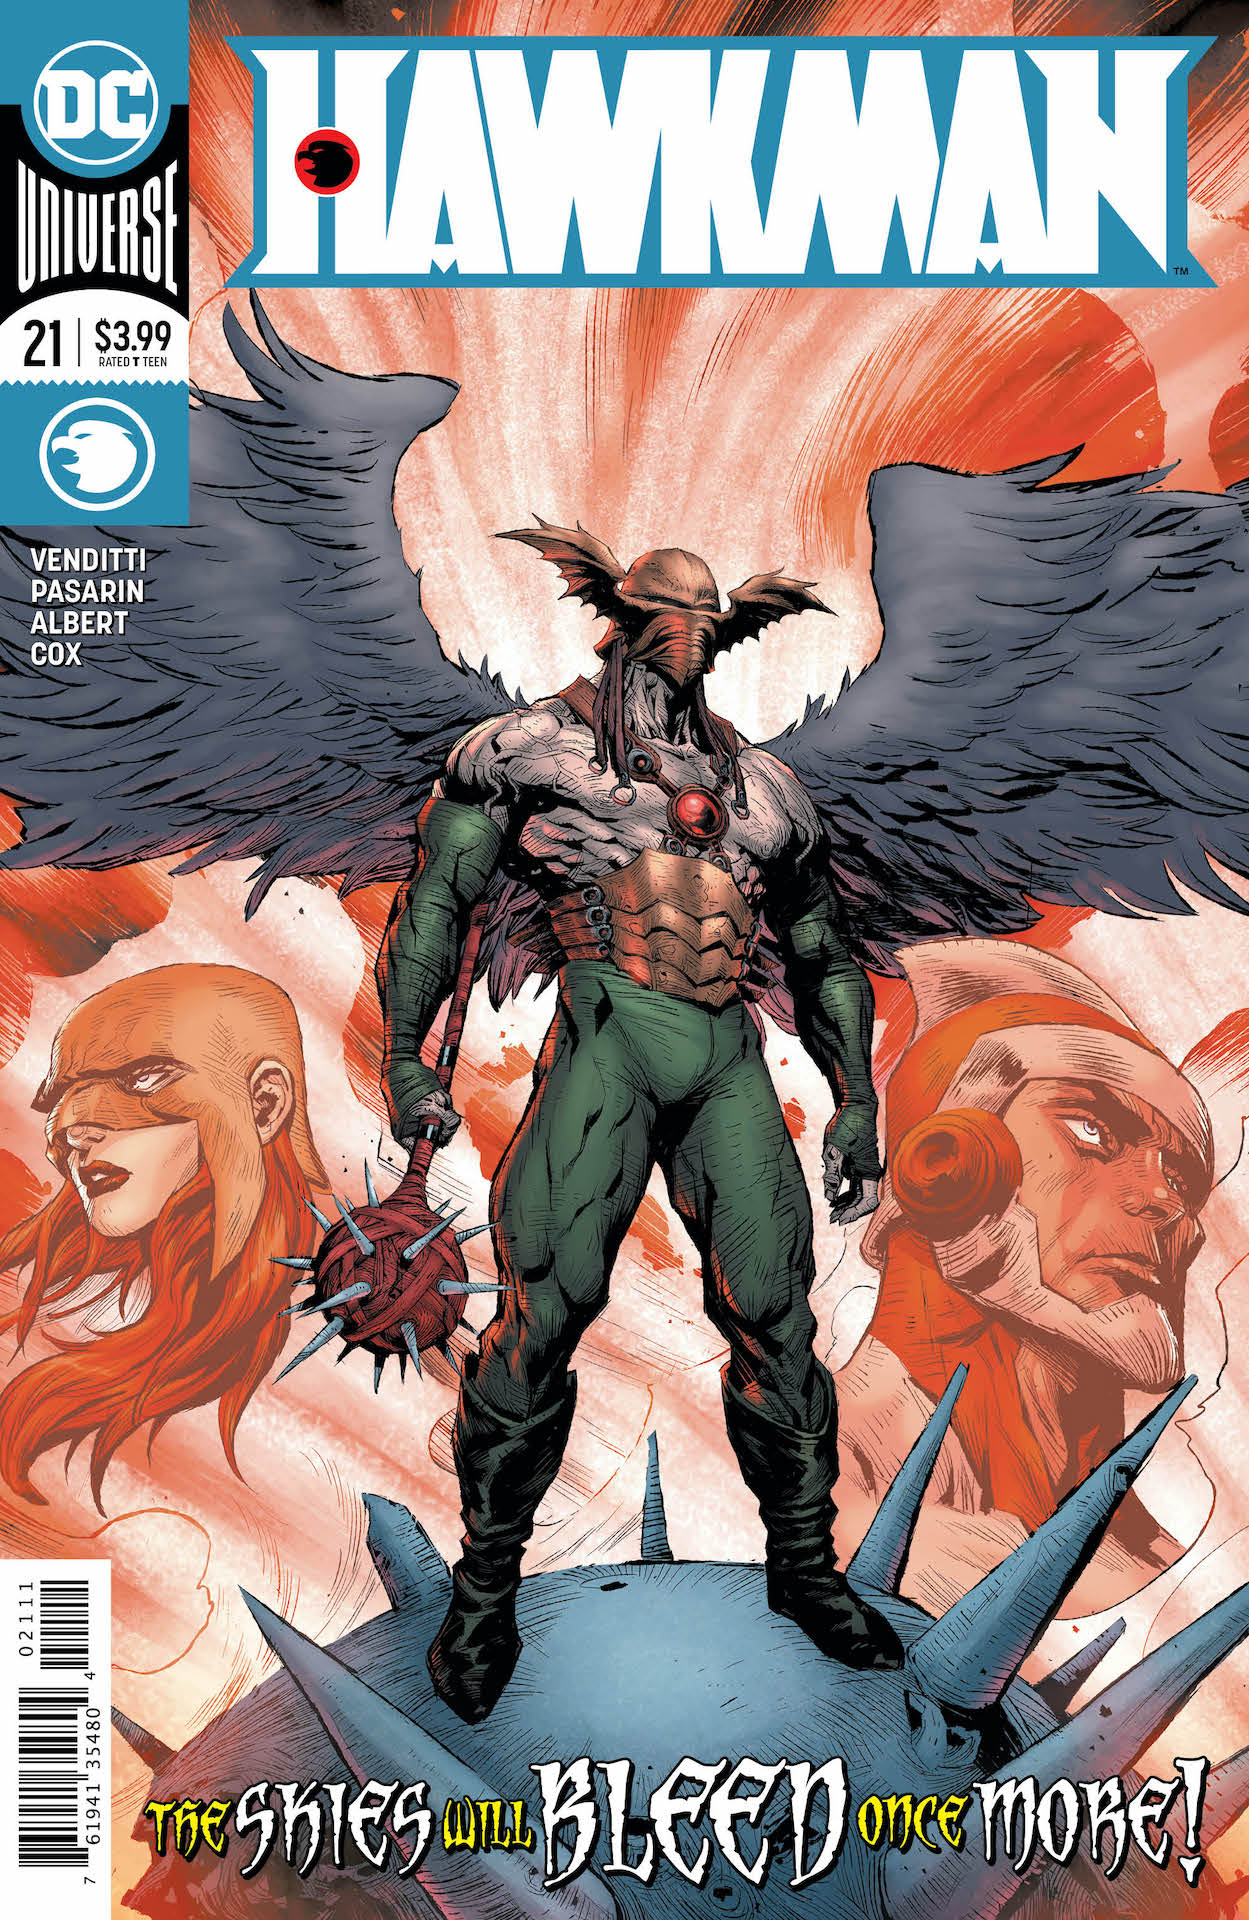 DC Preview: Hawkman #21